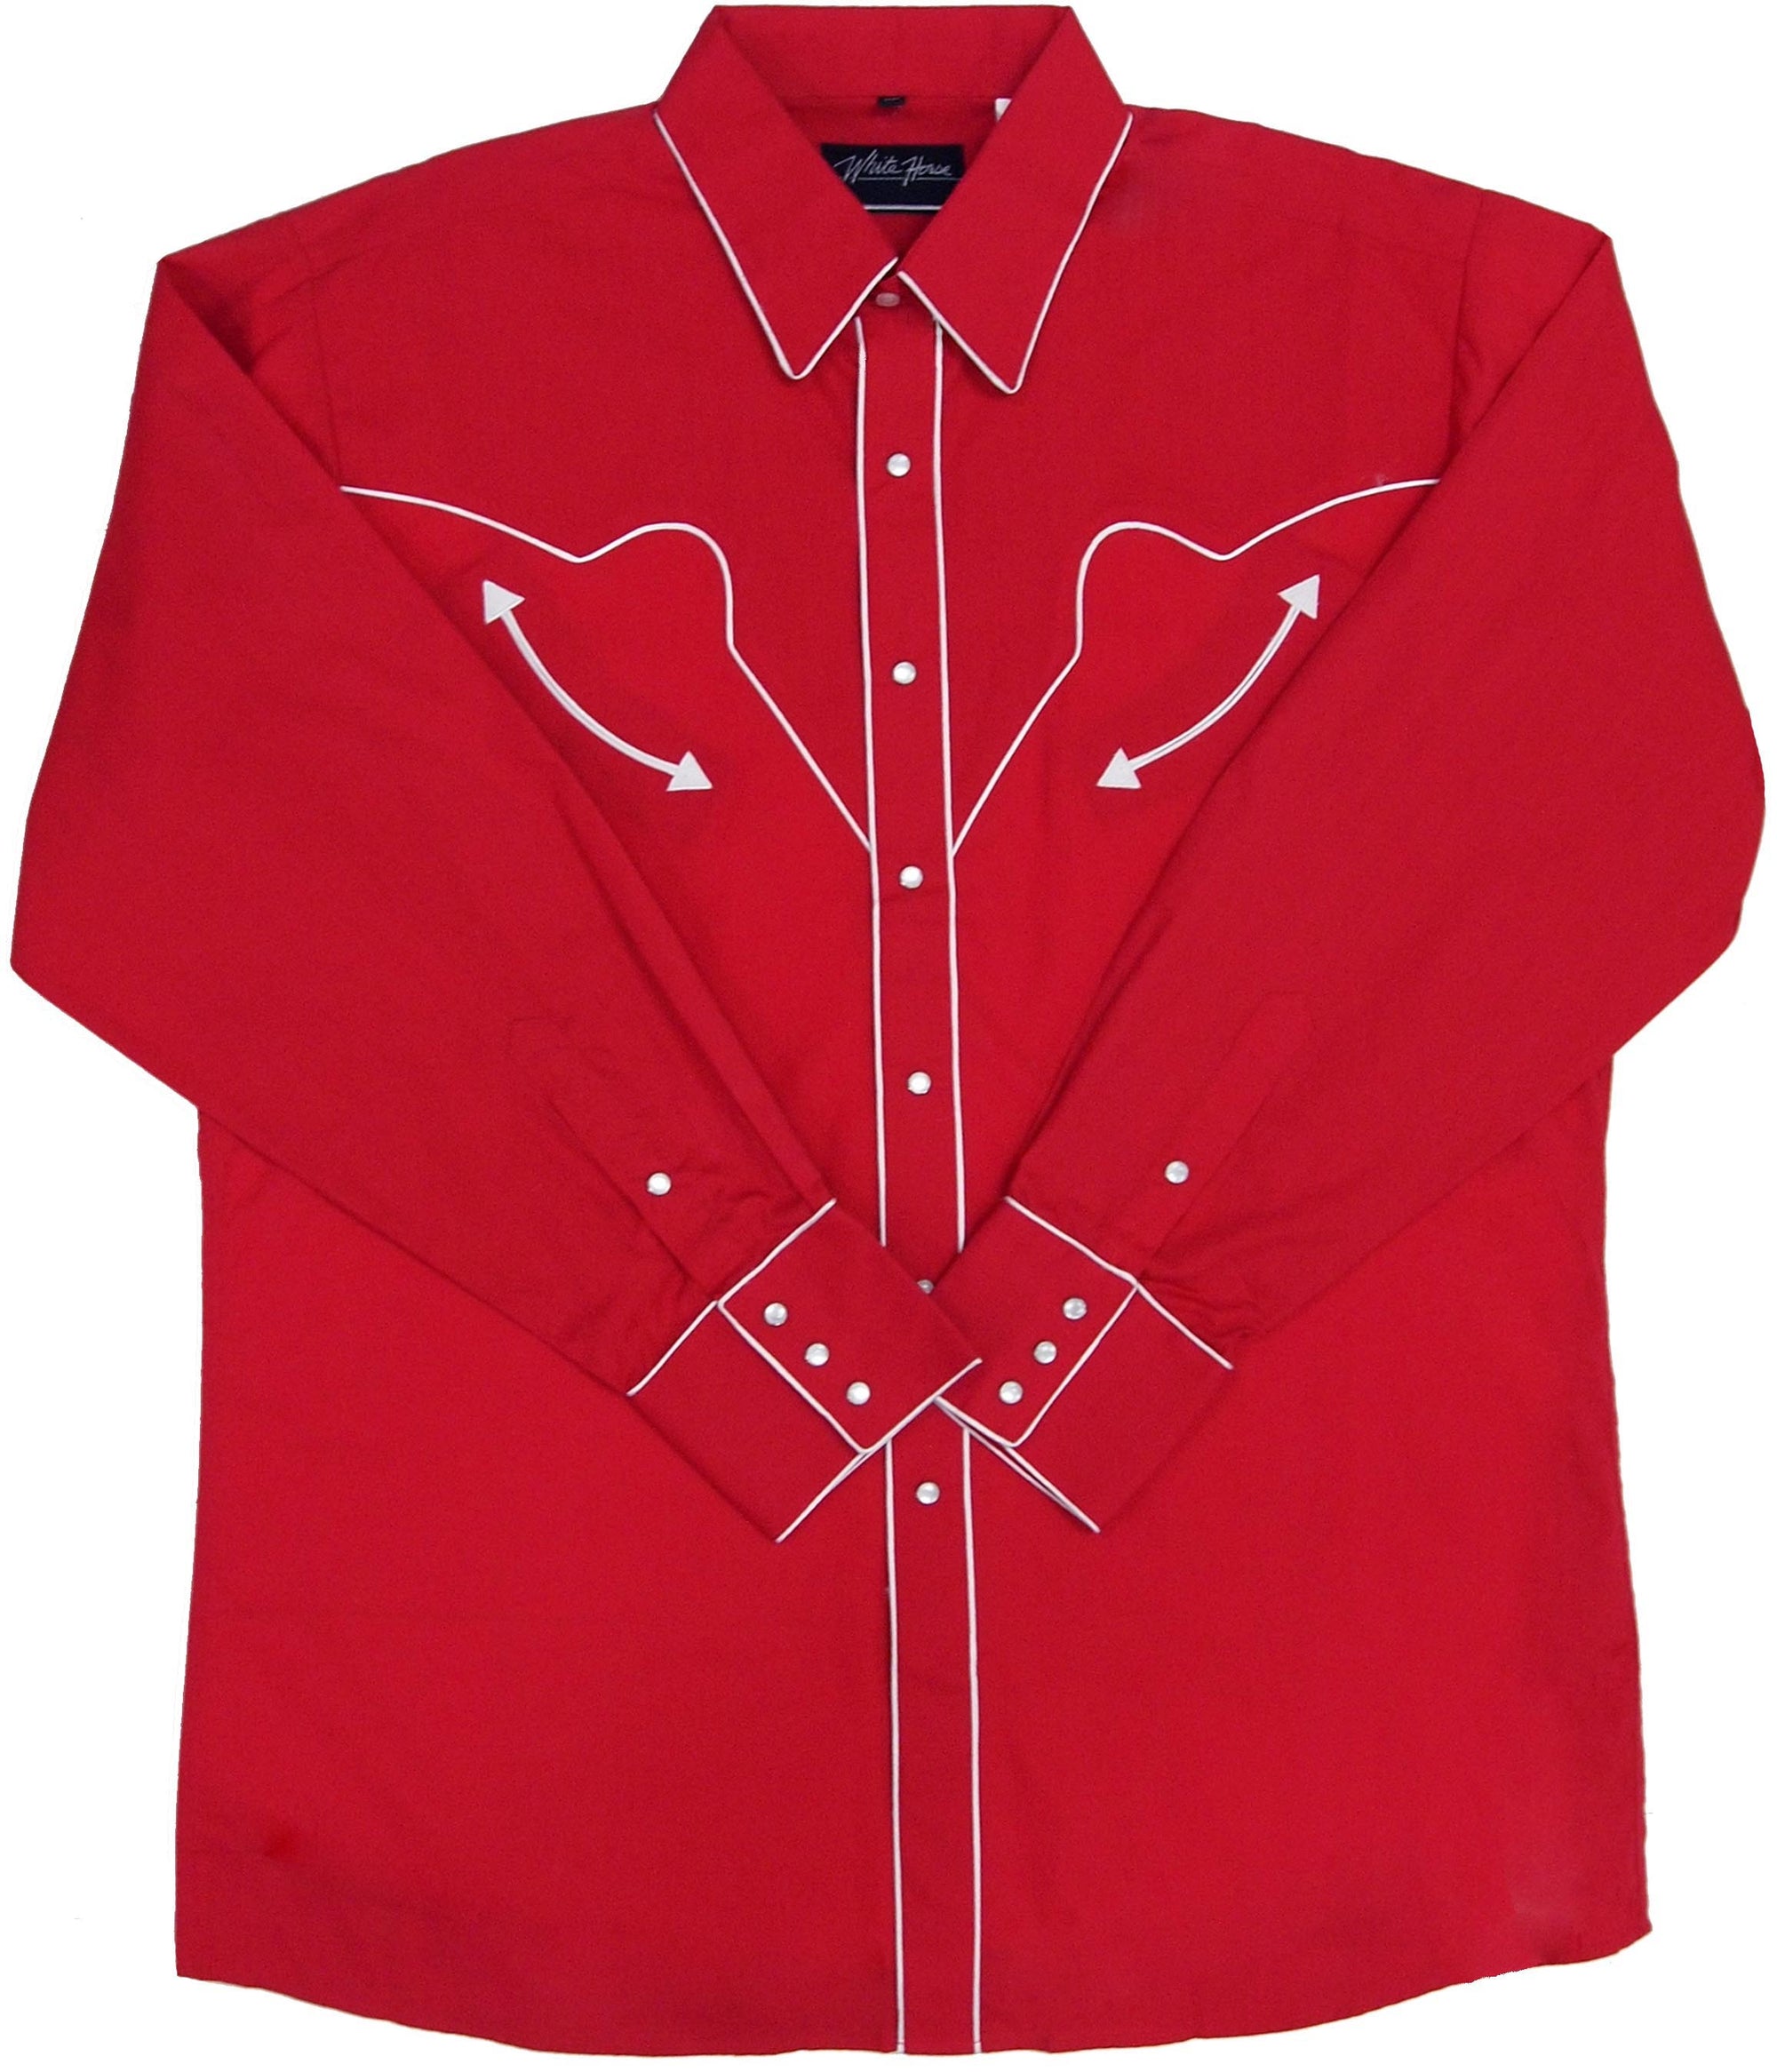 White Horse Men's Retro Red L/S Shirt - Big Sizes